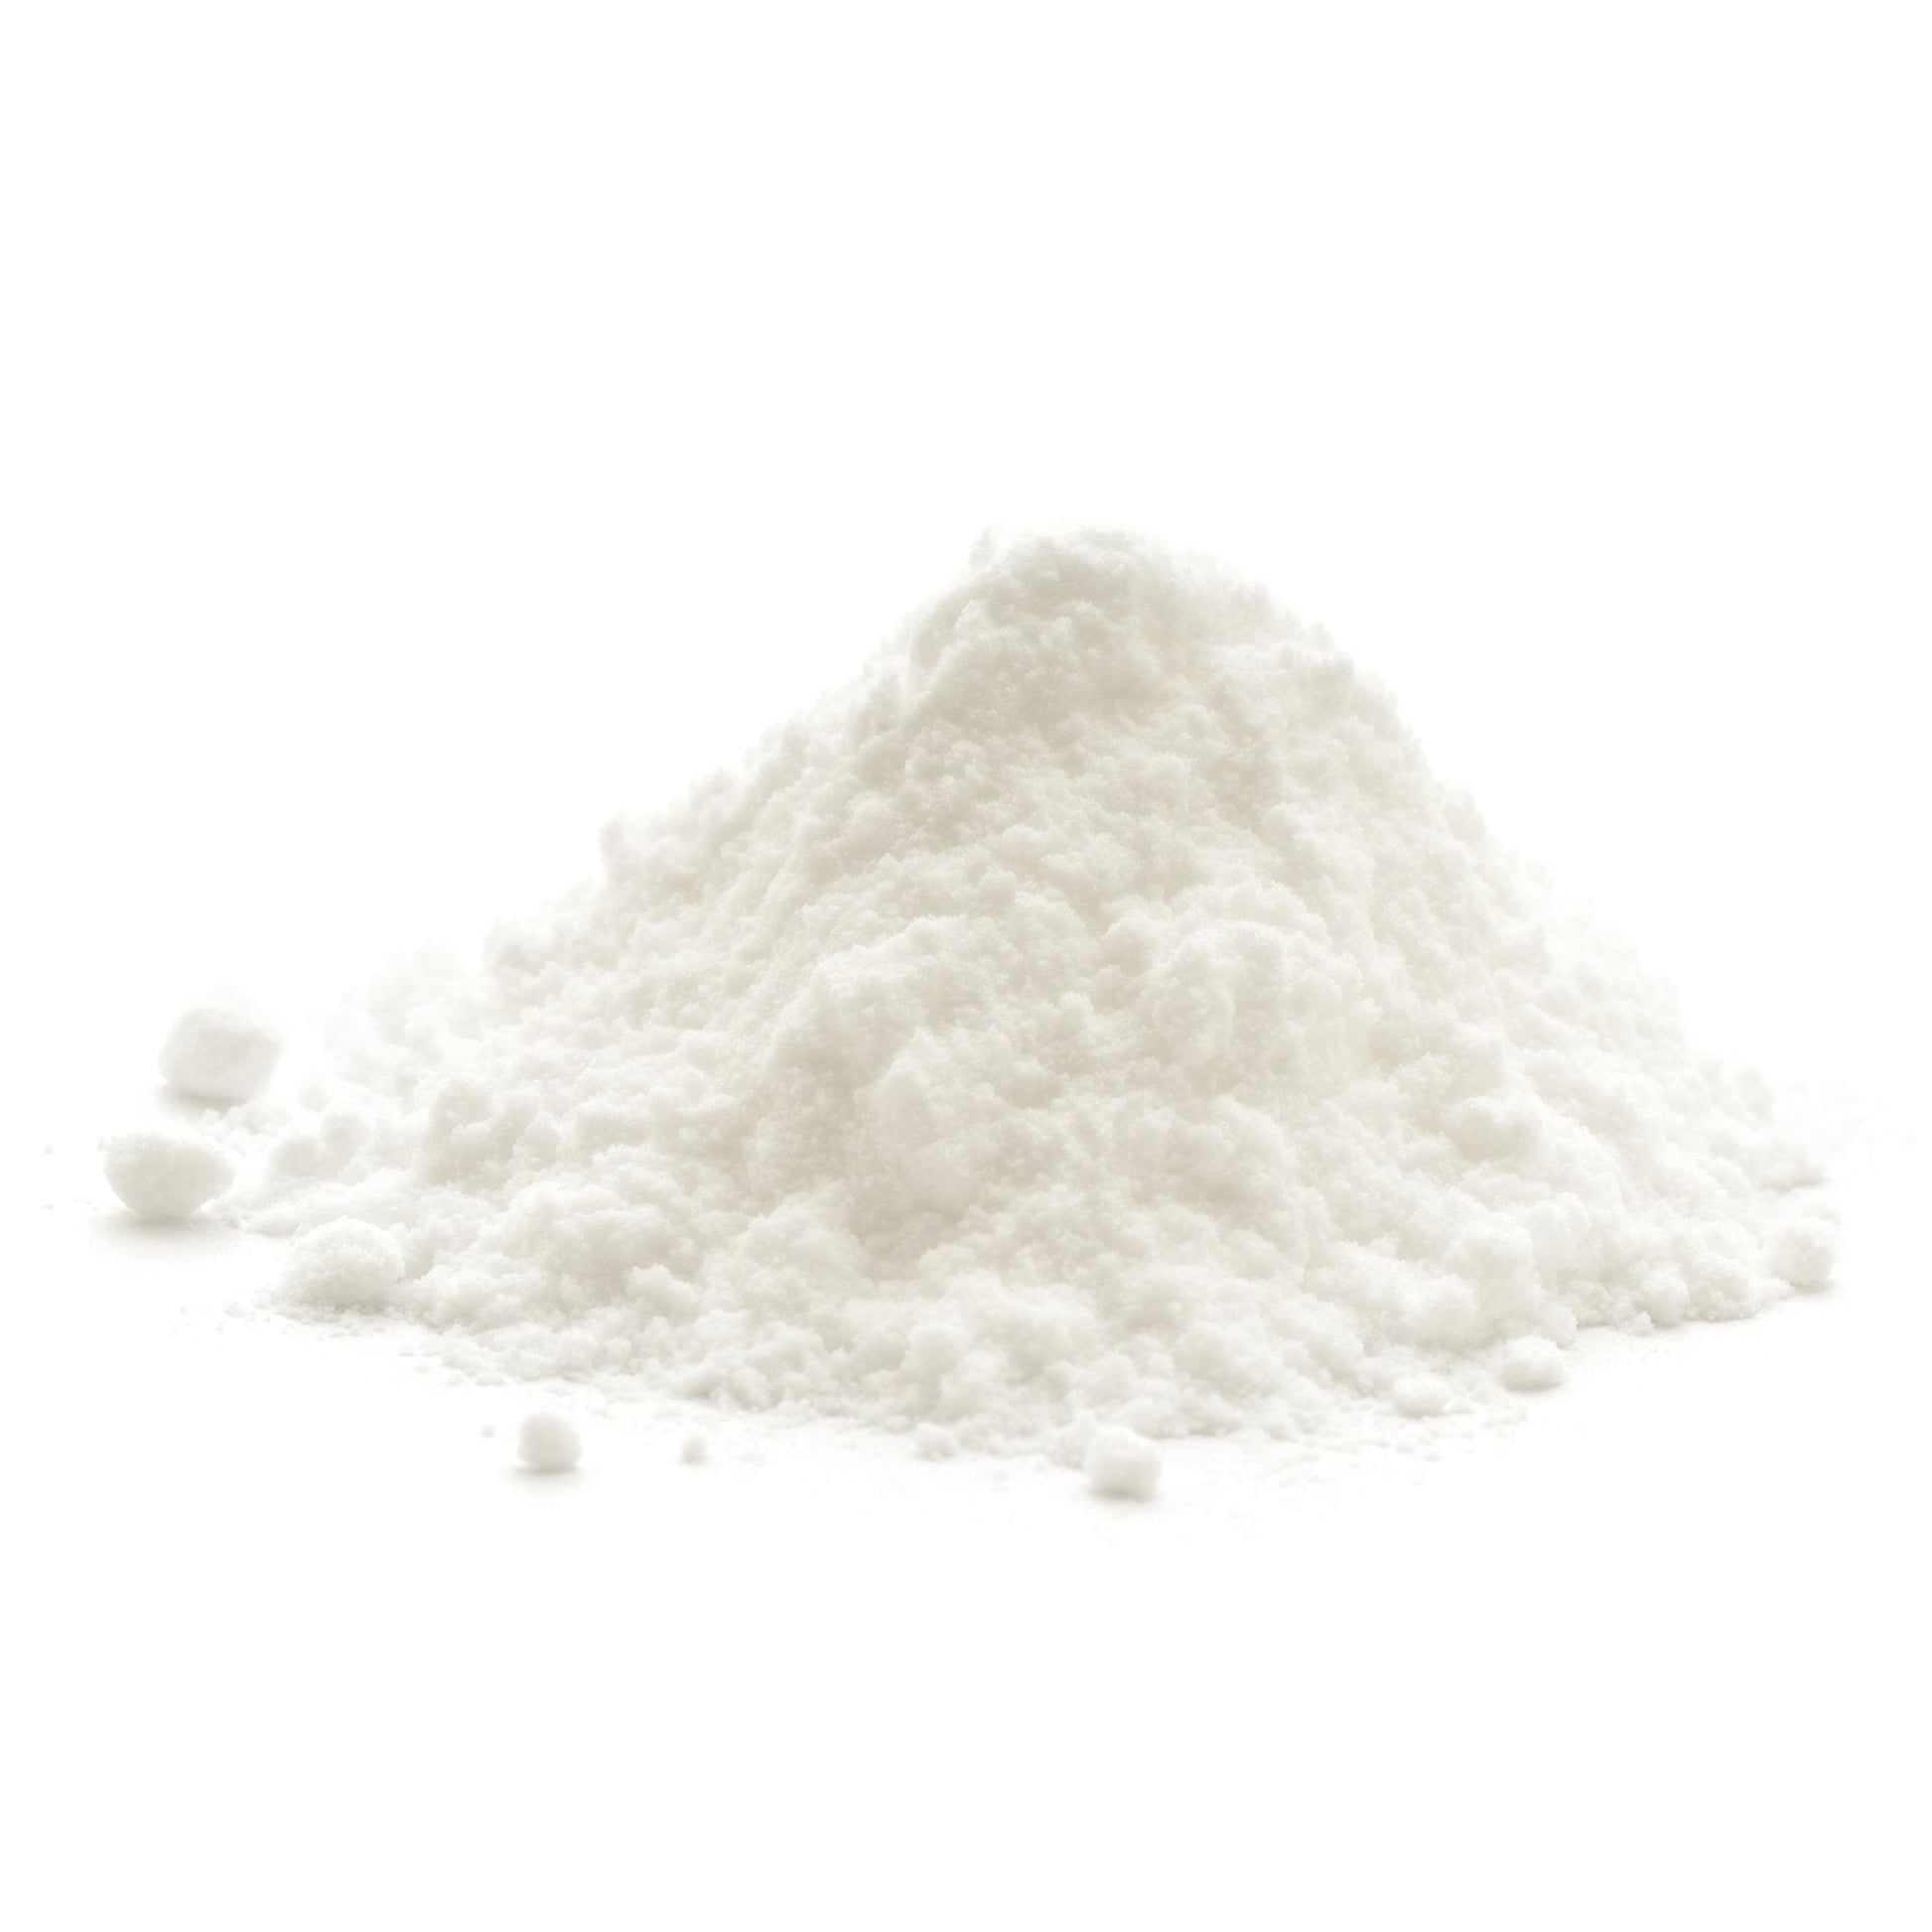 Buy Bulk Baking Soda (Sodium Bicarbonate) - 25KG – TheSoapery